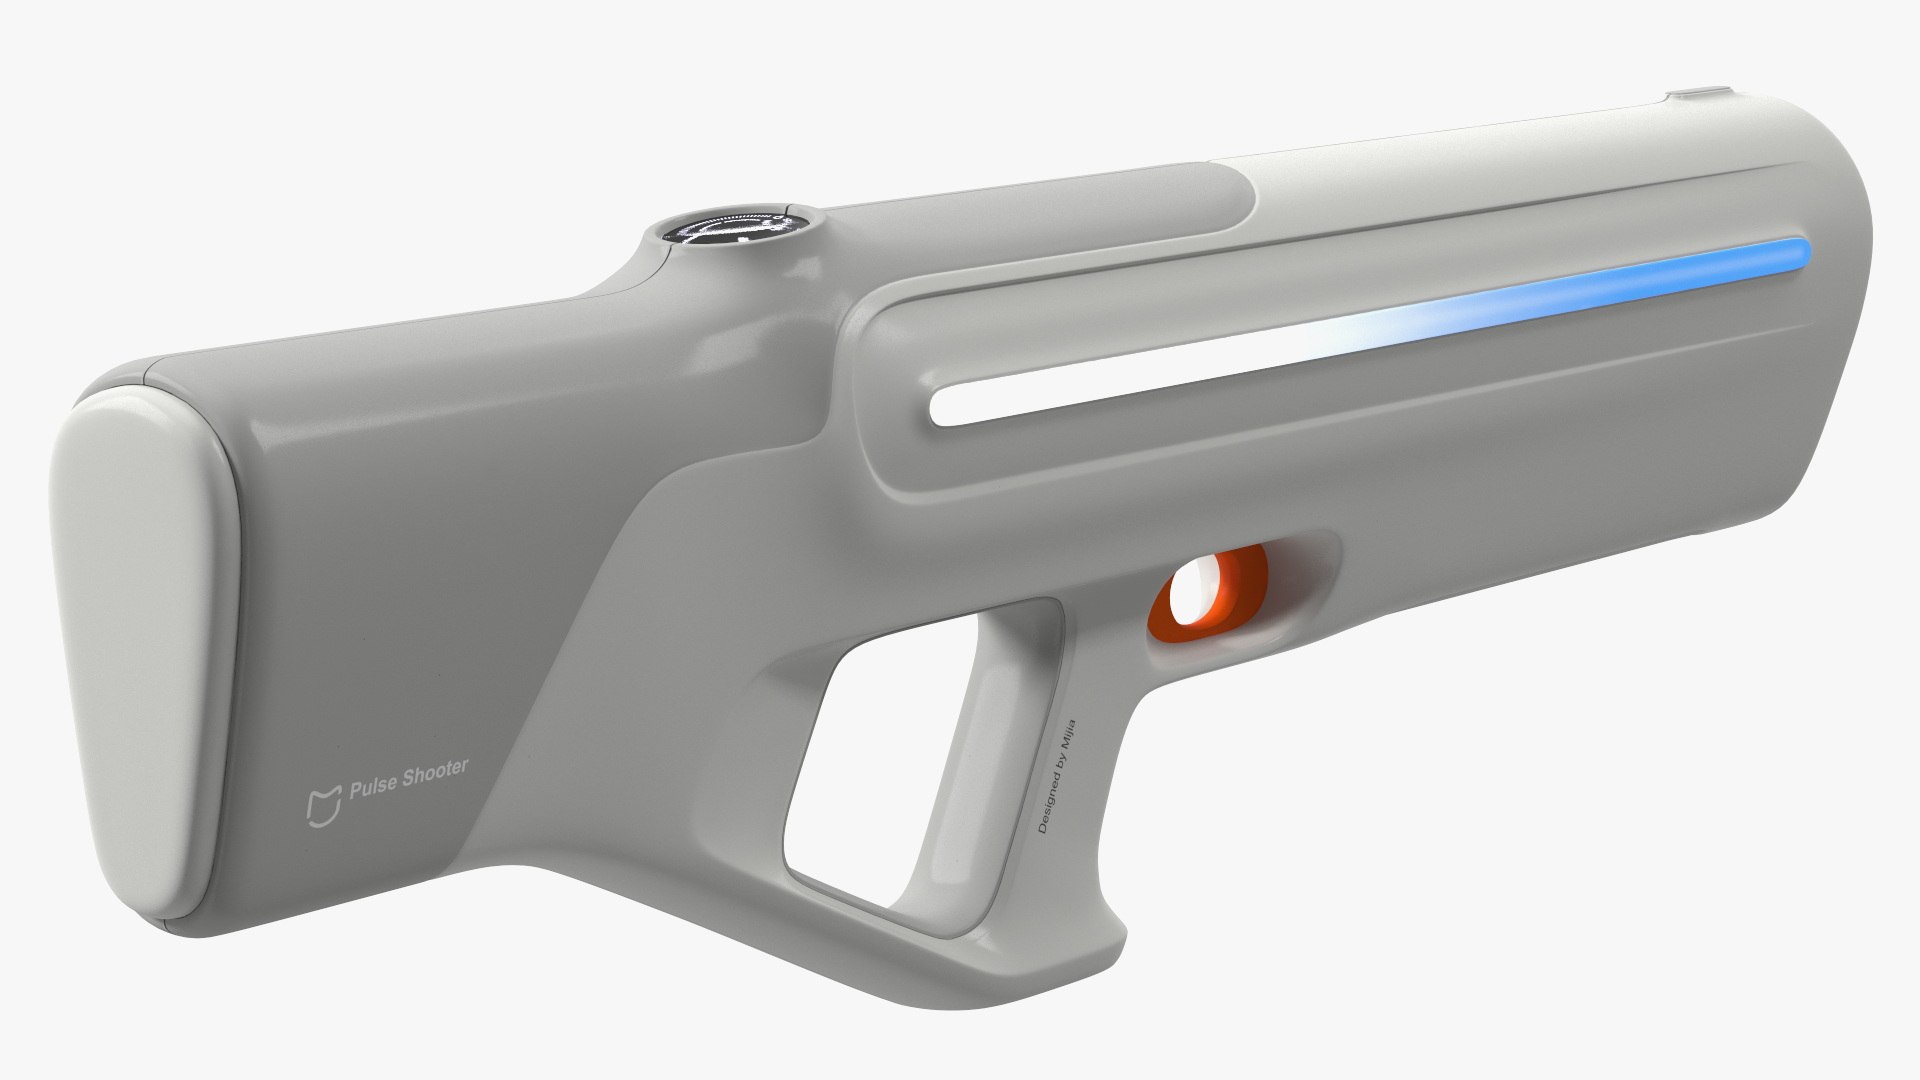 3D Xiaomi Mijia Pulse Water Gun Model - TurboSquid 2152250